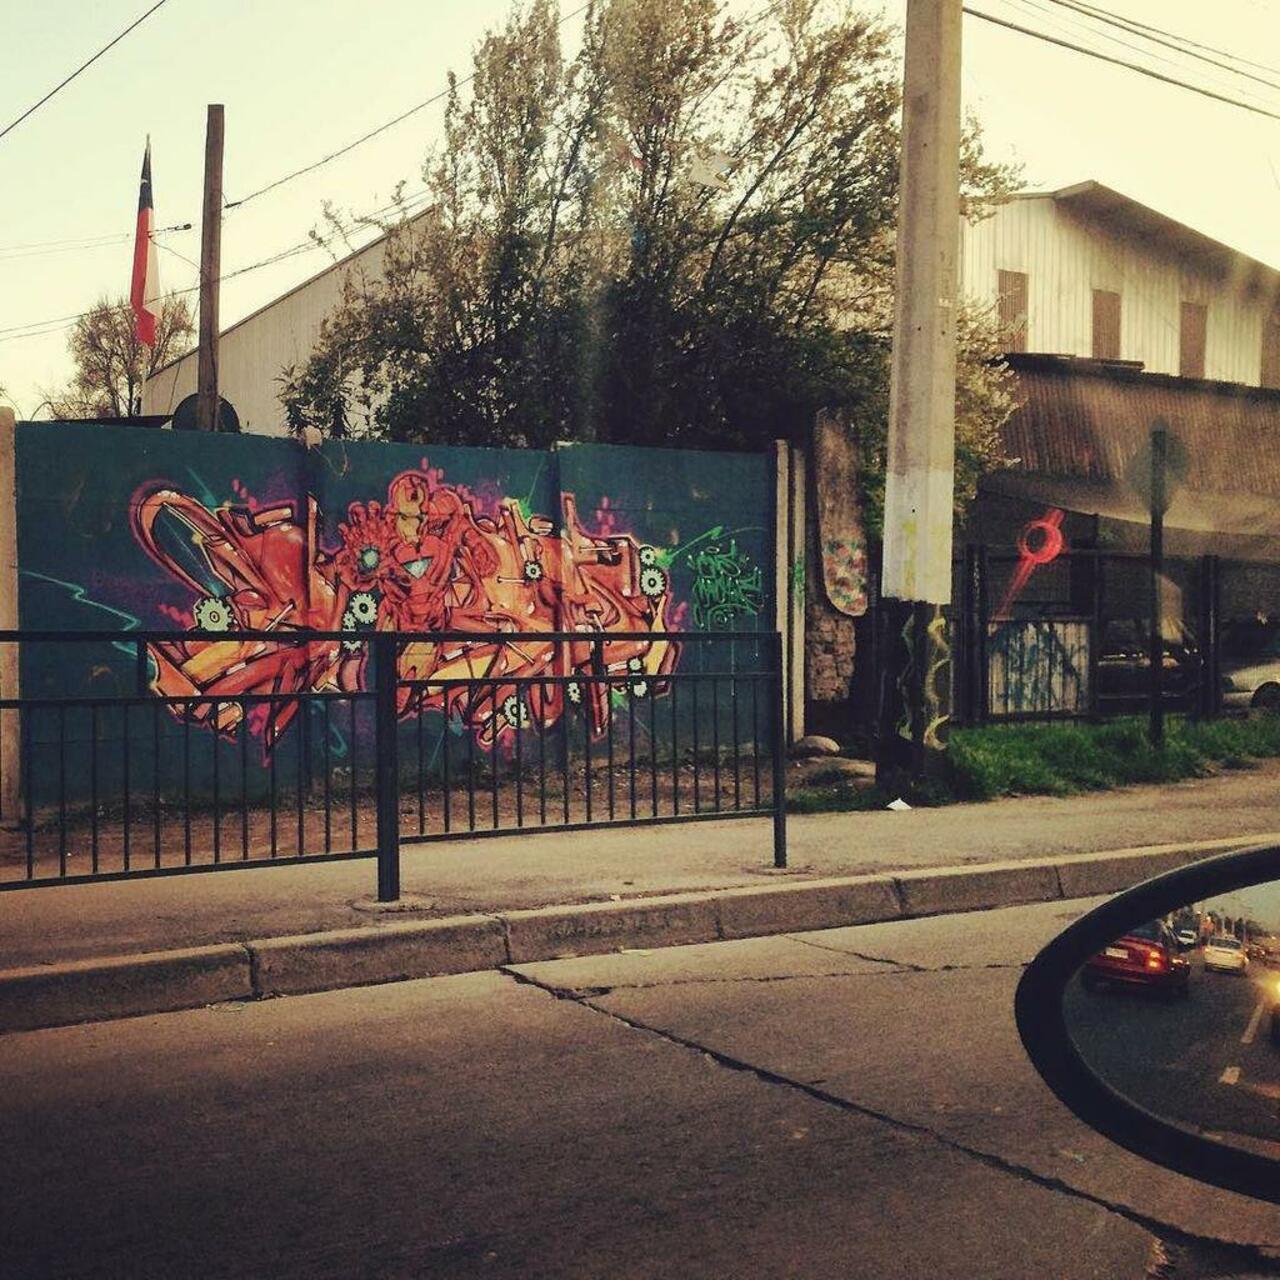 RT @artpushr: via #abolleman "http://ift.tt/1LjHOM8" #graffiti #streetart http://t.co/Fq81J9qB8m